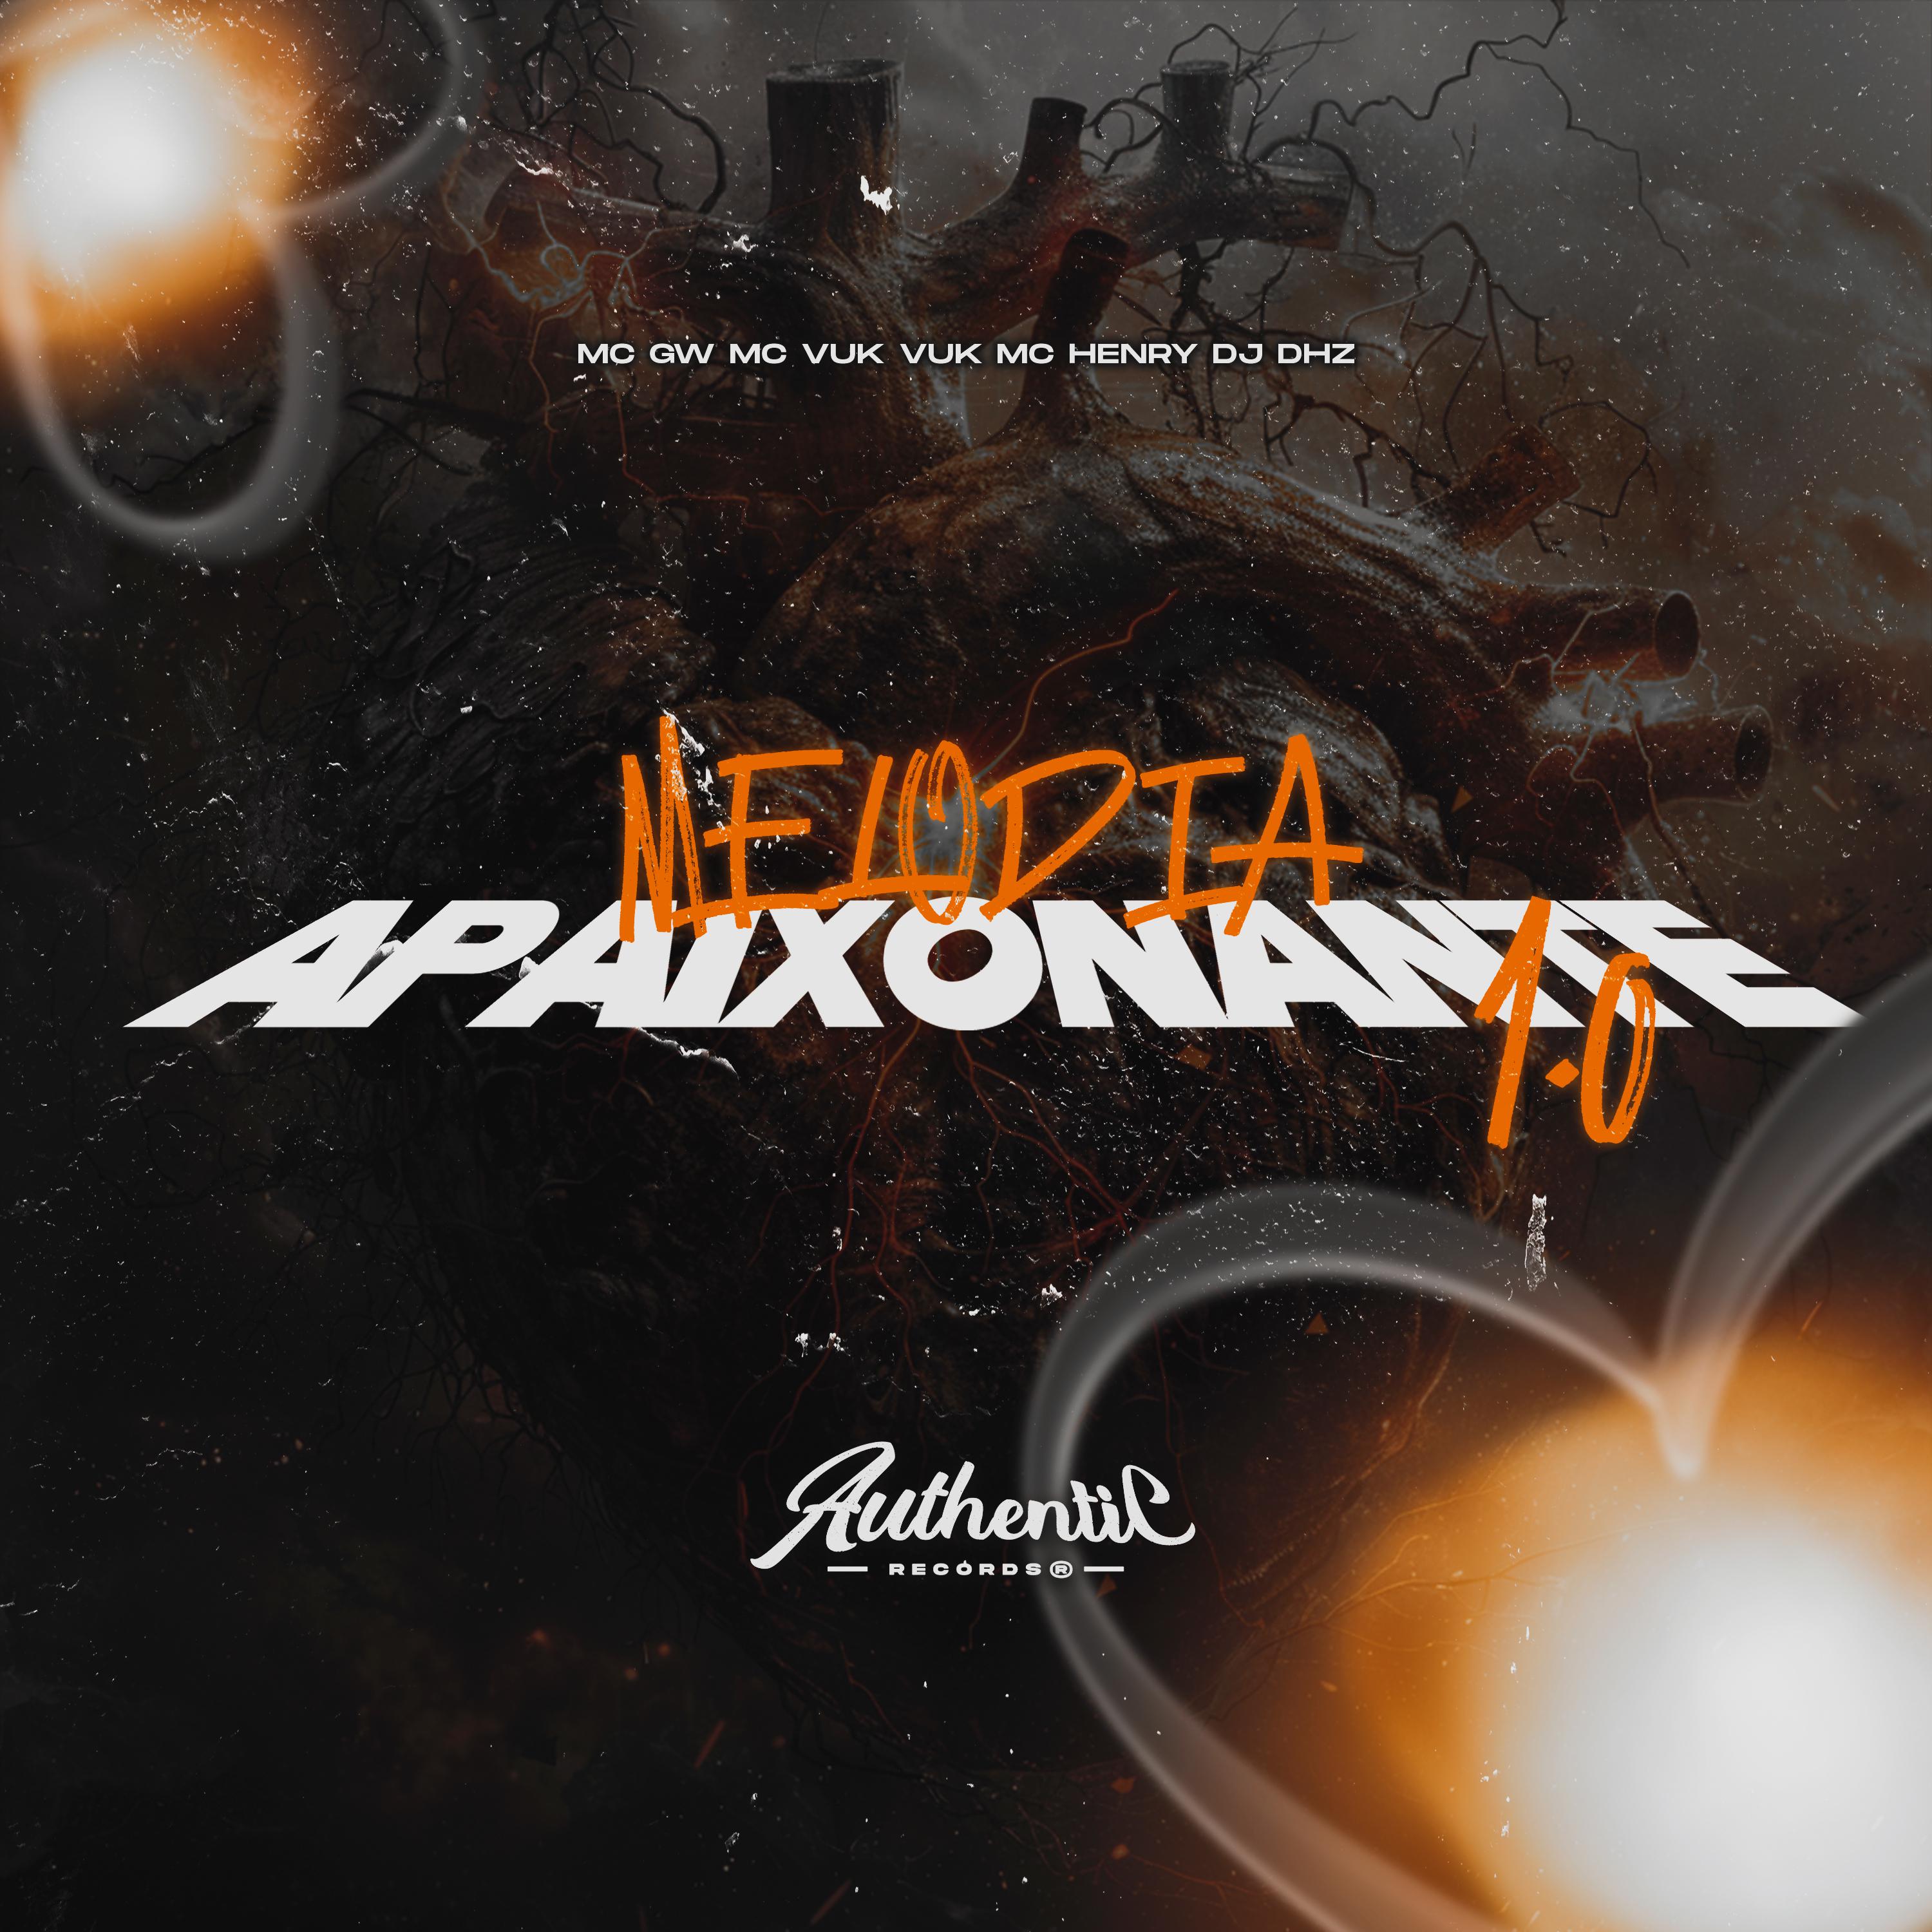 DJ Dhz - Melodia Apaixonante 1.0